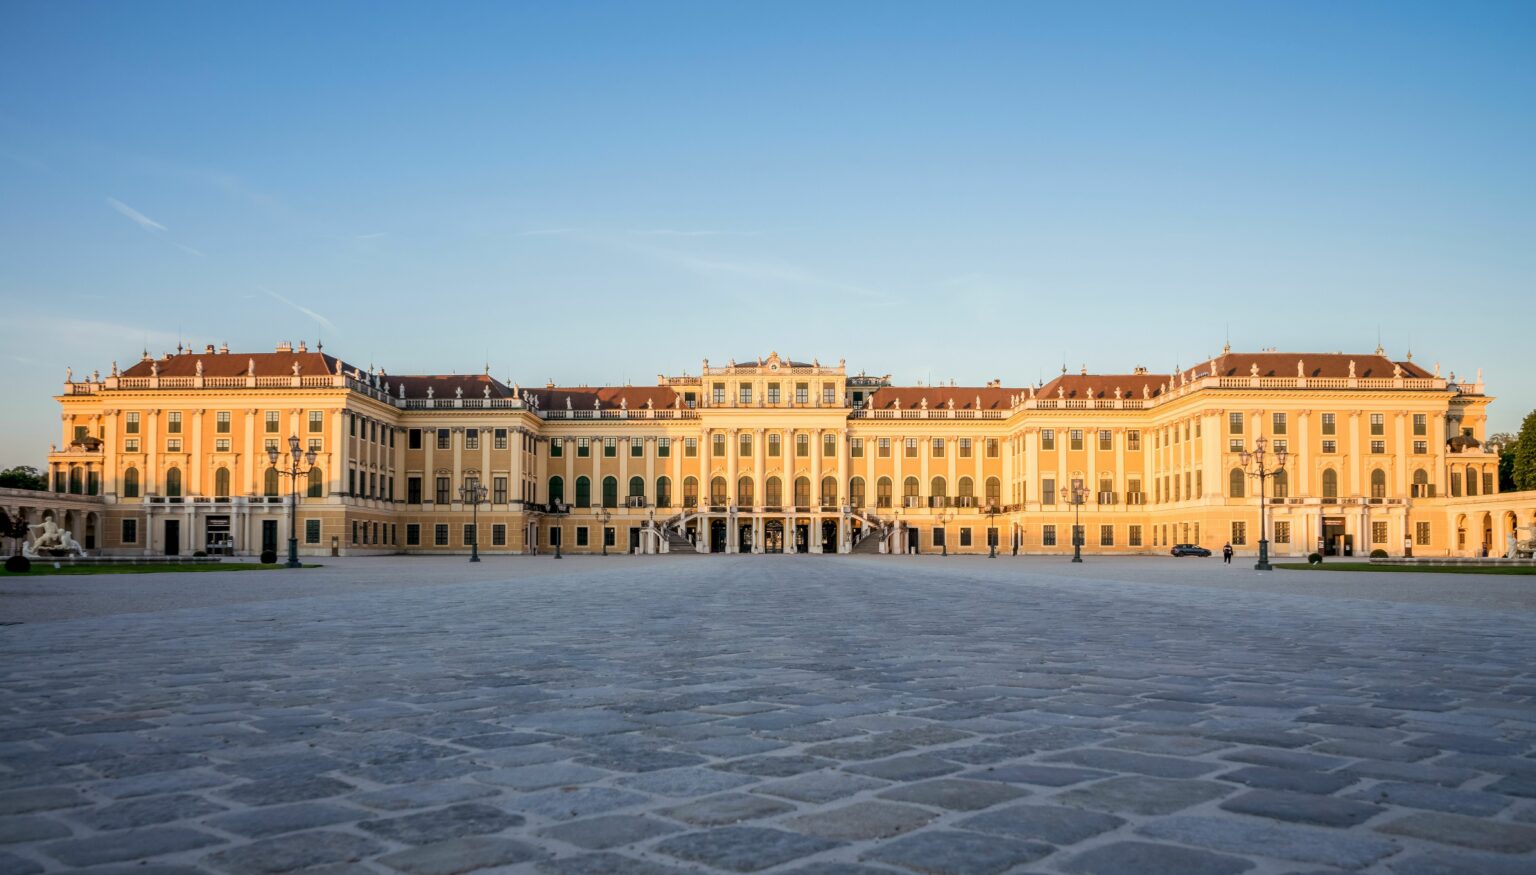 Schönbrunn Palace entrance on a sunny day